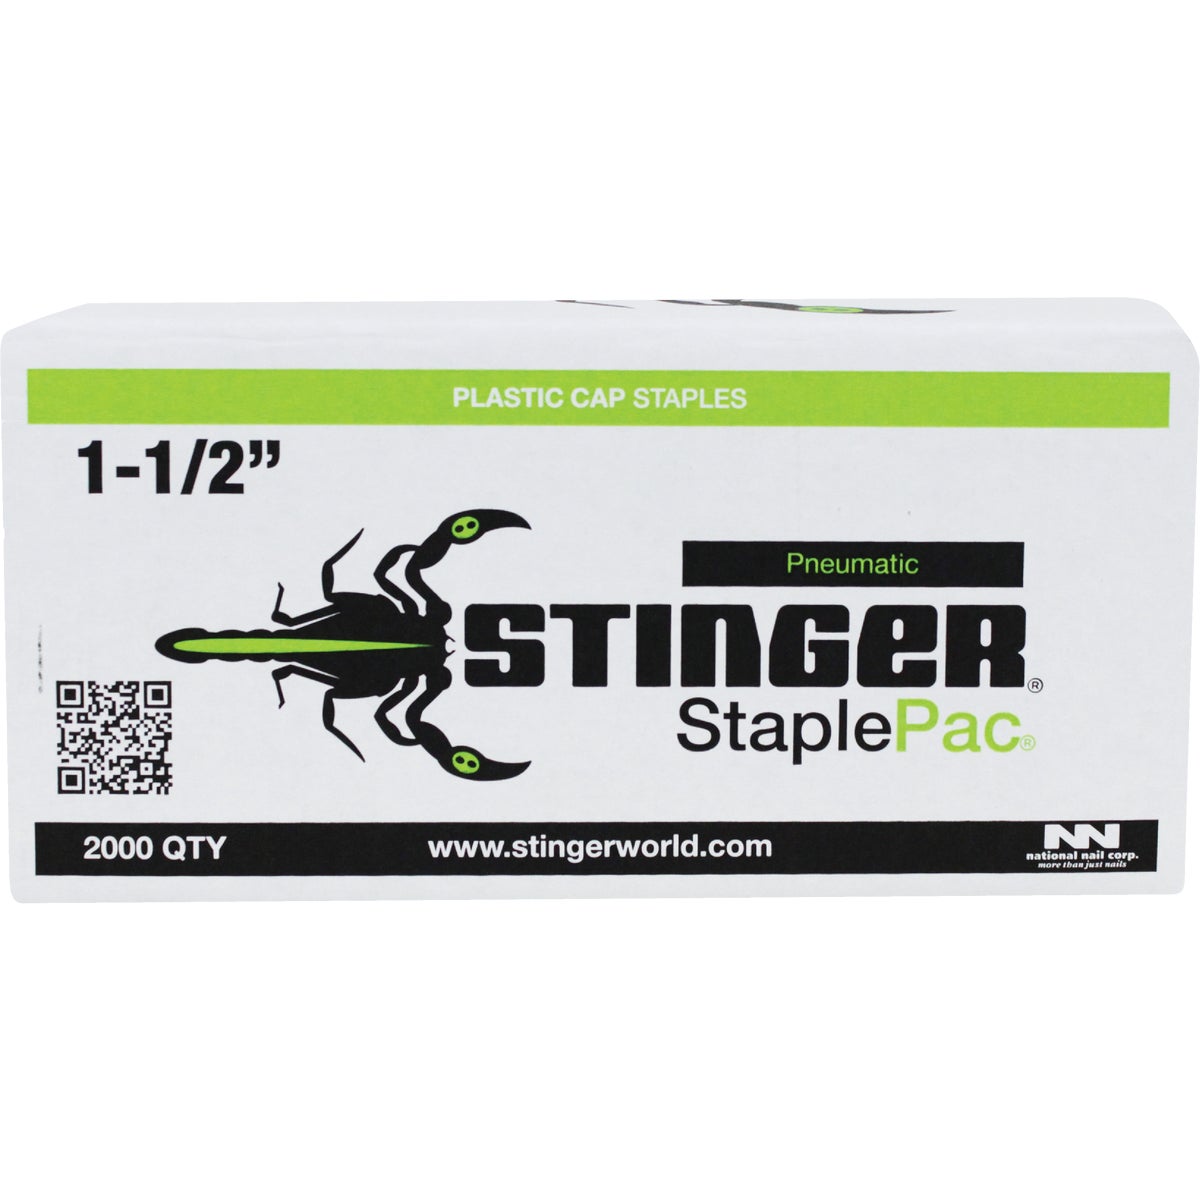 Stinger StaplePac 18-Gauge 7/16 In. x 1-1/2 In. Caps & Staples (2000 Ct.)